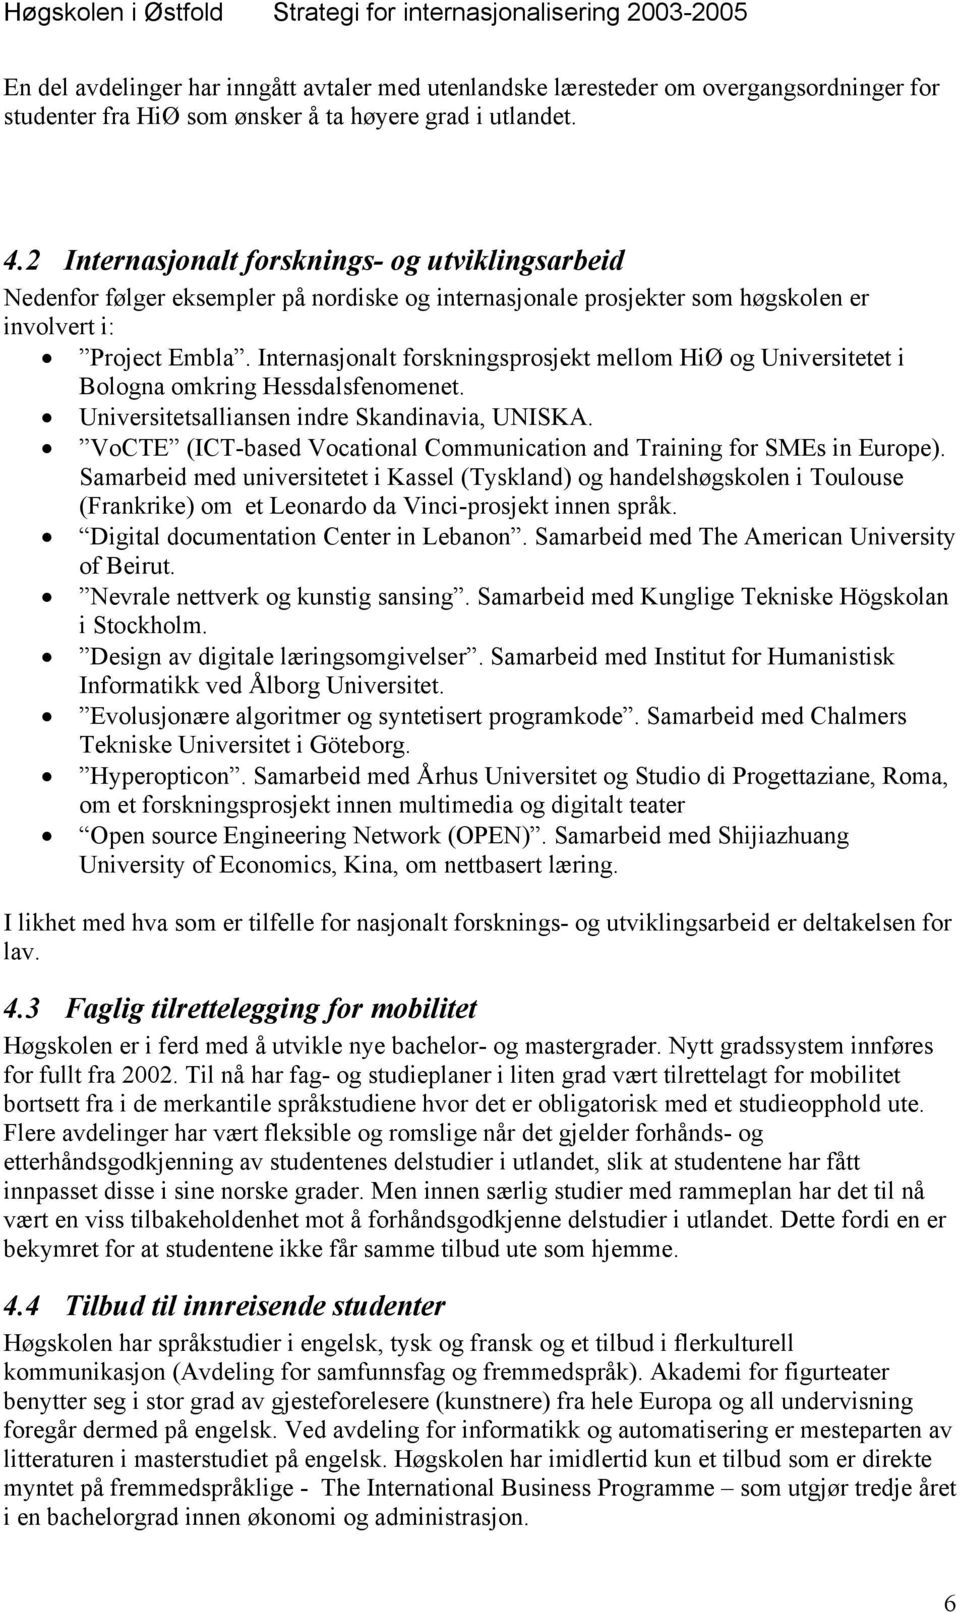 Internasjonalt forskningsprosjekt mellom HiØ og Universitetet i Bologna omkring Hessdalsfenomenet. Universitetsalliansen indre Skandinavia, UNISKA.